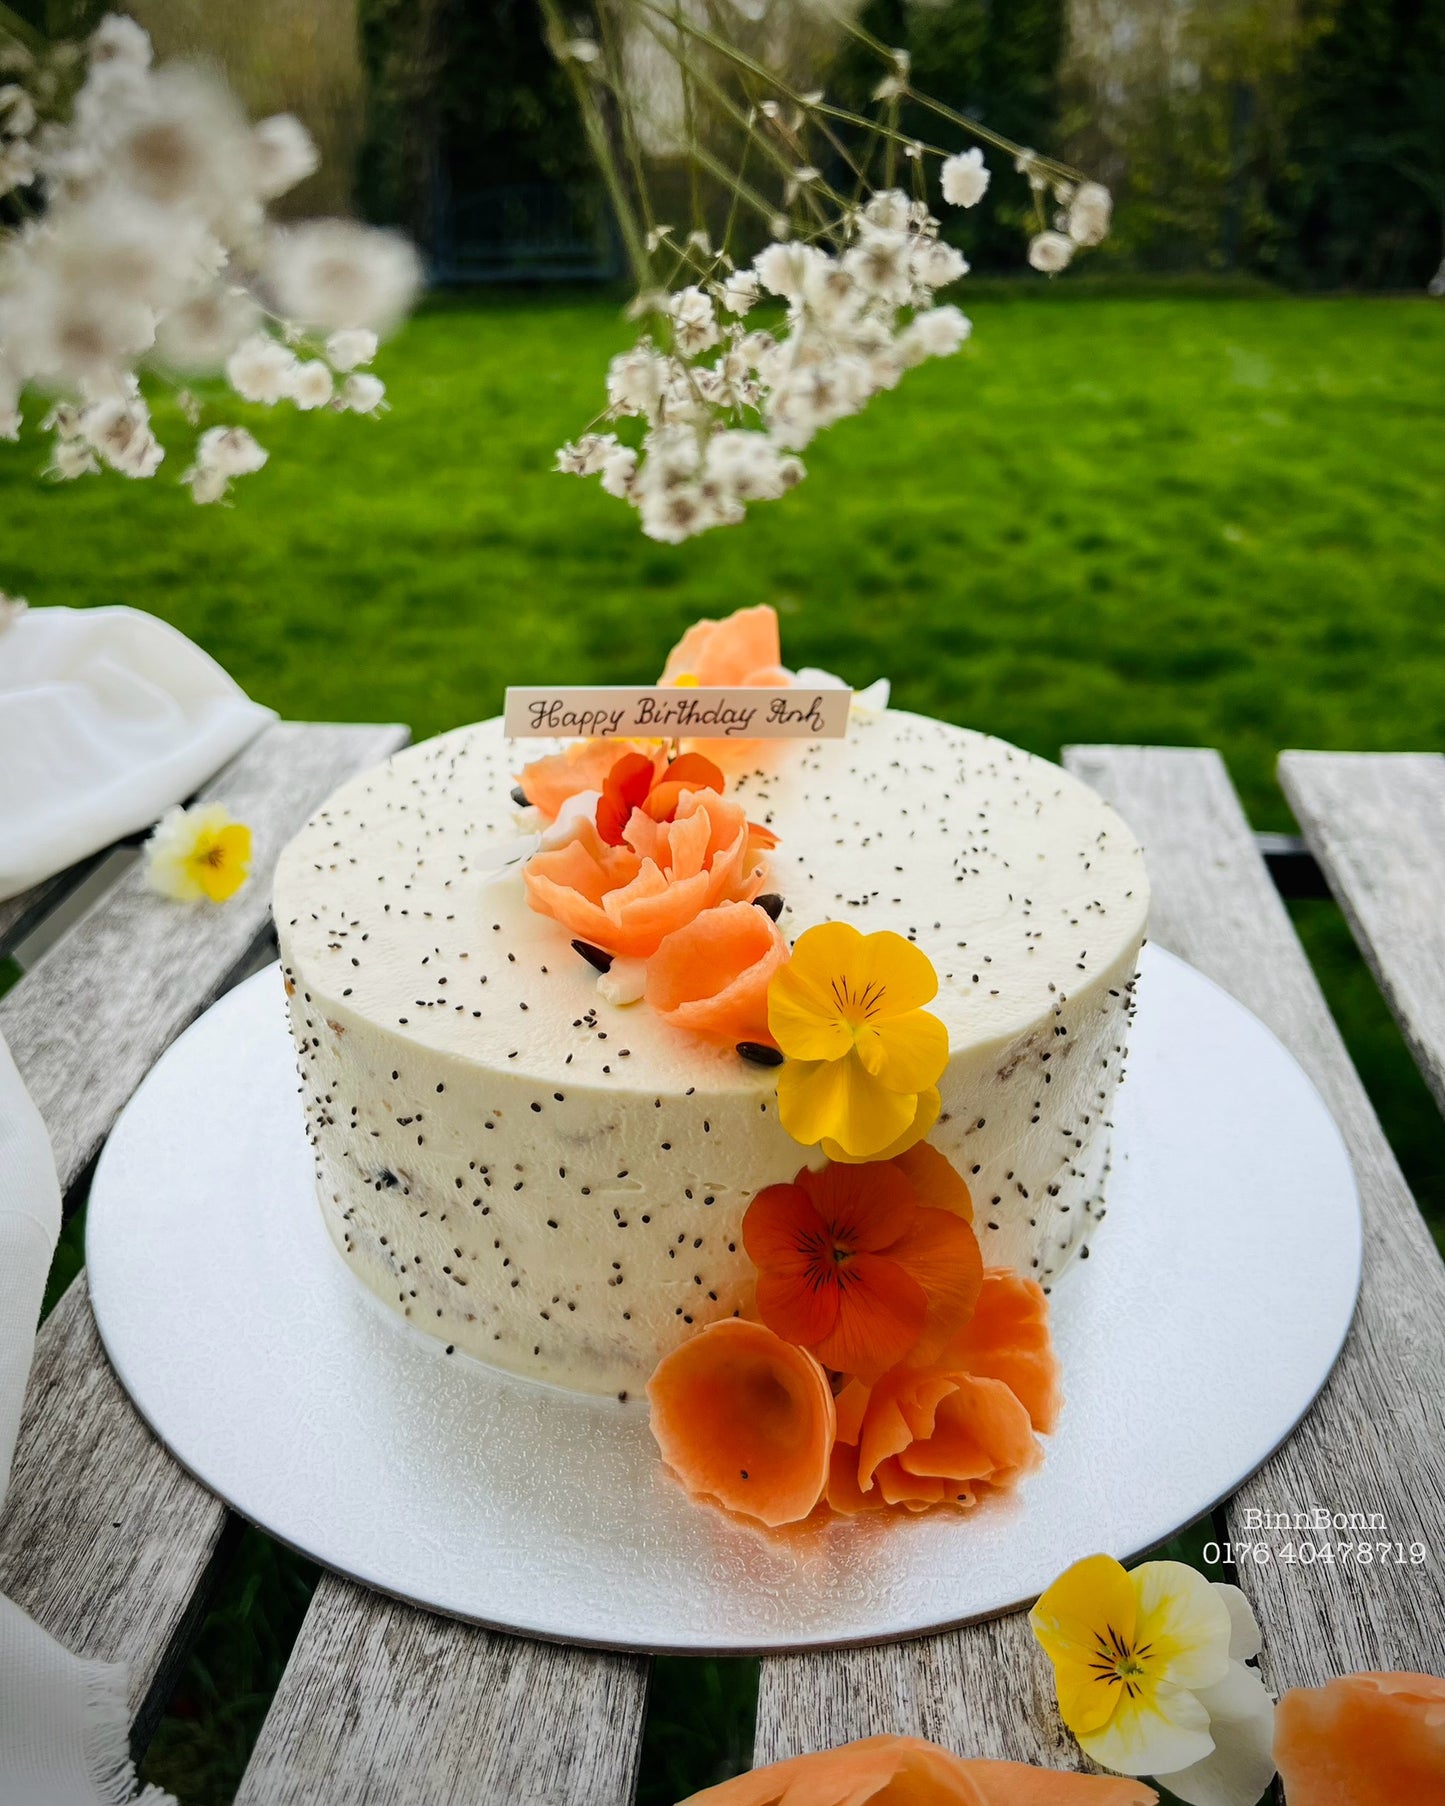 7. Torte "Carrot Cake" mit Möhren Kürbiskernen und Frischkäse 22 cm